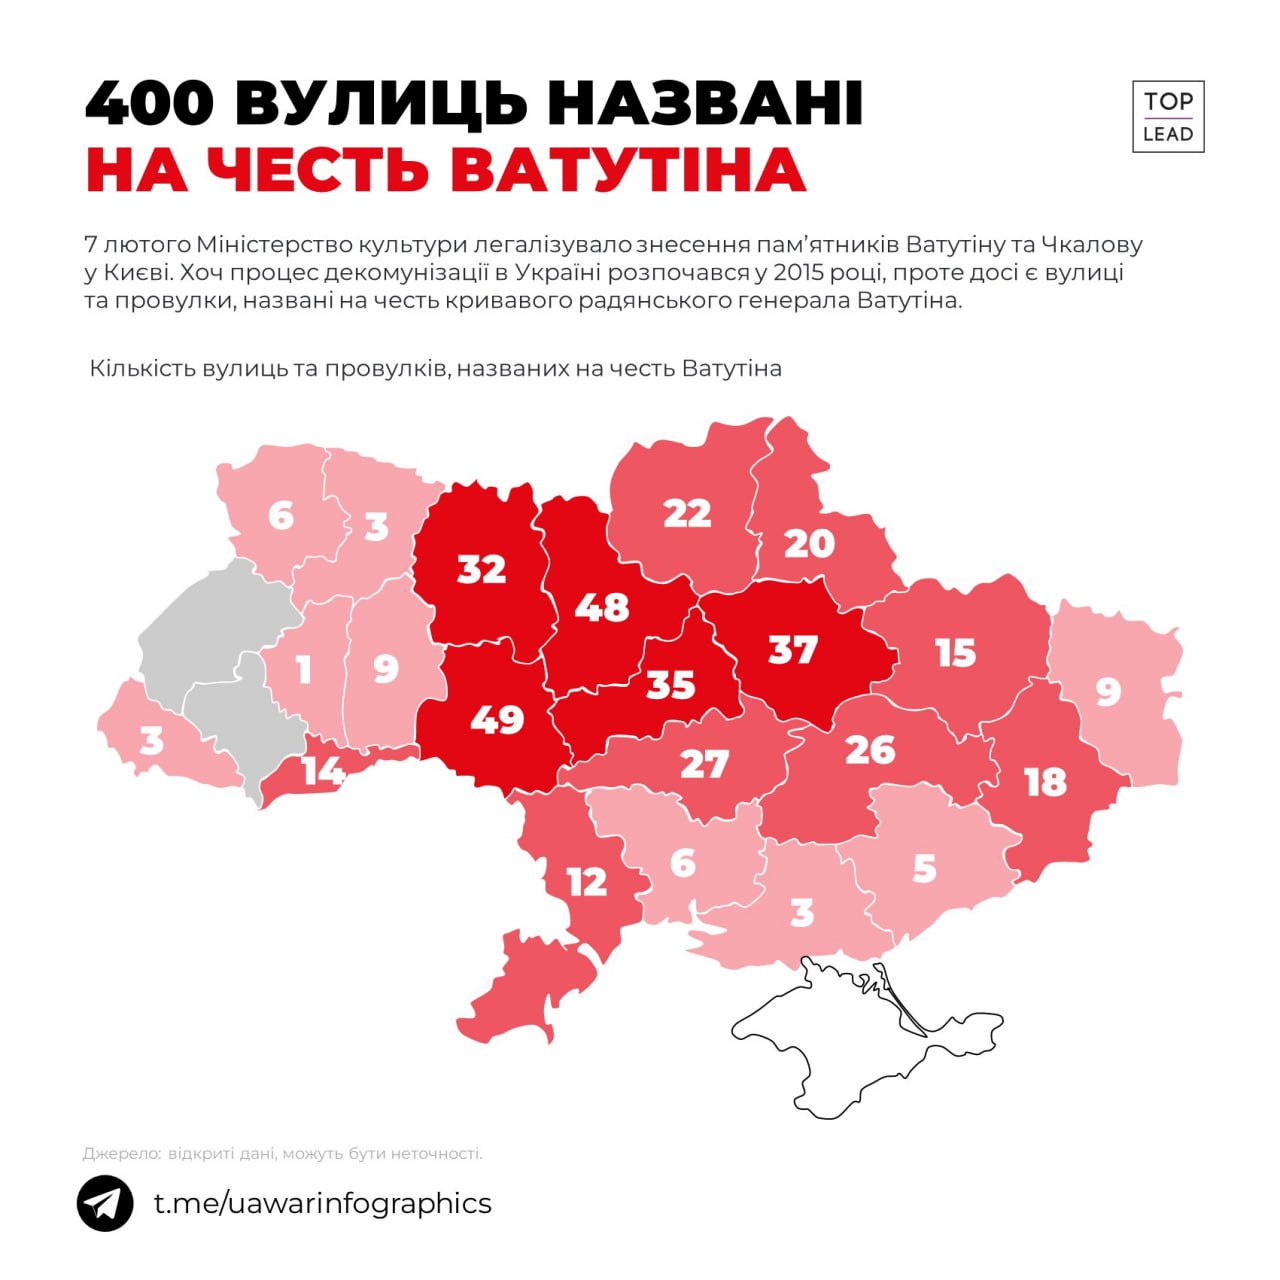 Скільки в Україні вулиць Ватутіна?